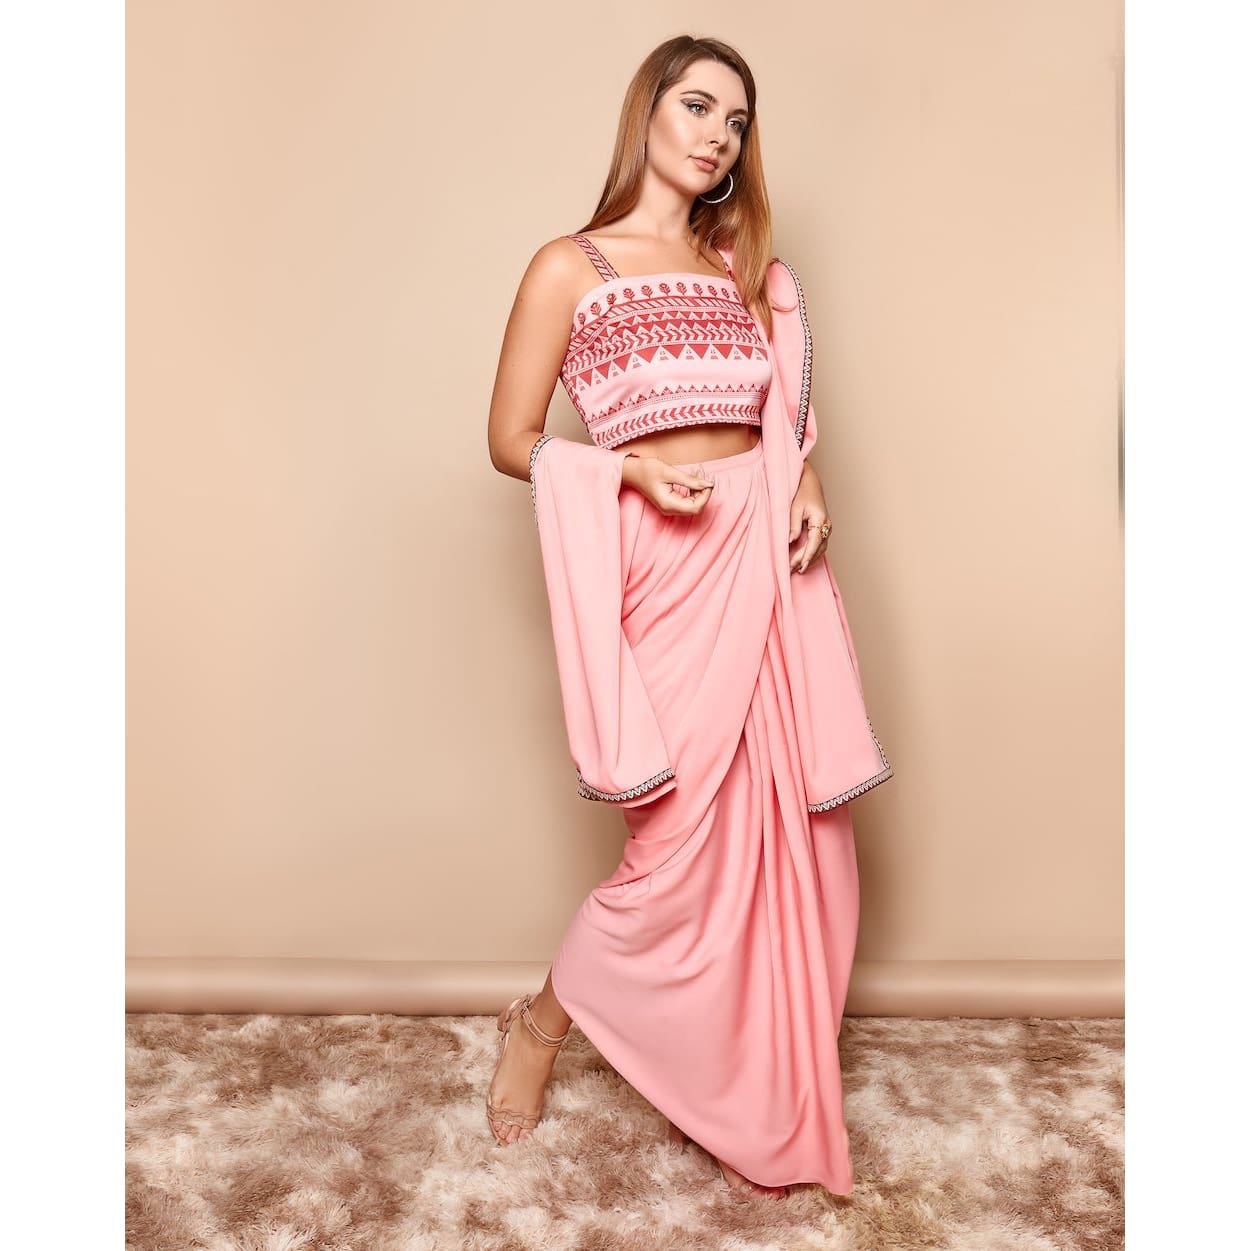 Indian Pink Saree Dress